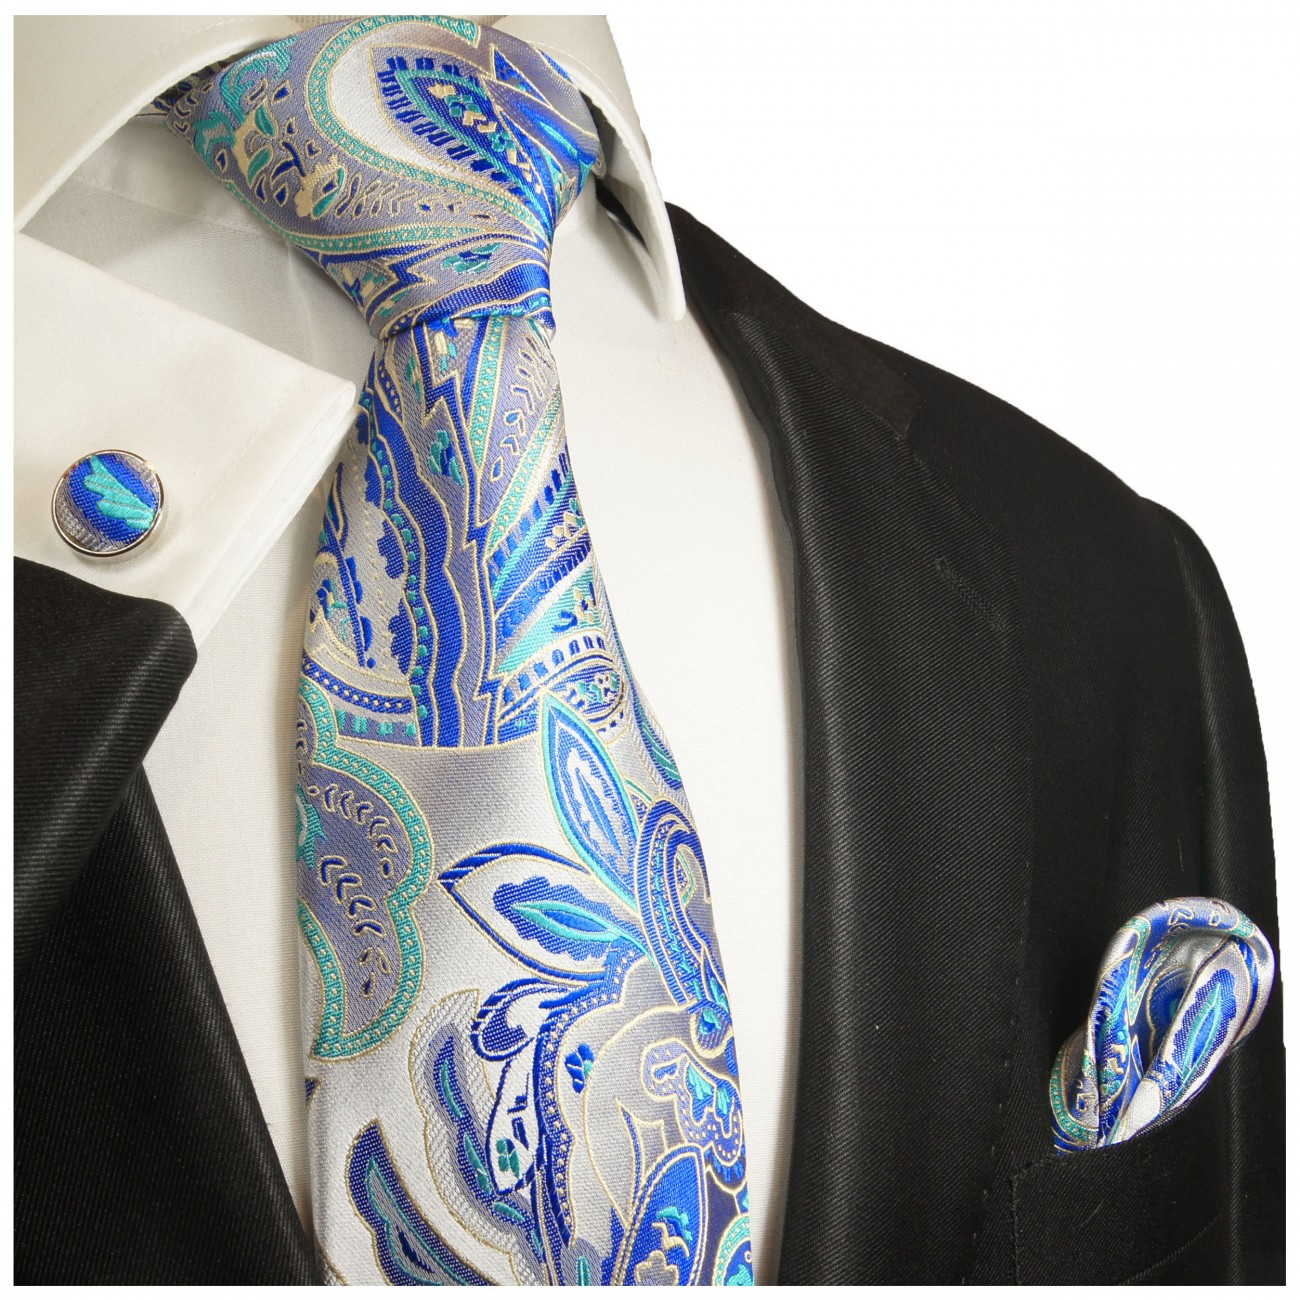 Krawatte silber mit Einstecktuch und Manschettenknöpfe blau paisley brokat 2019